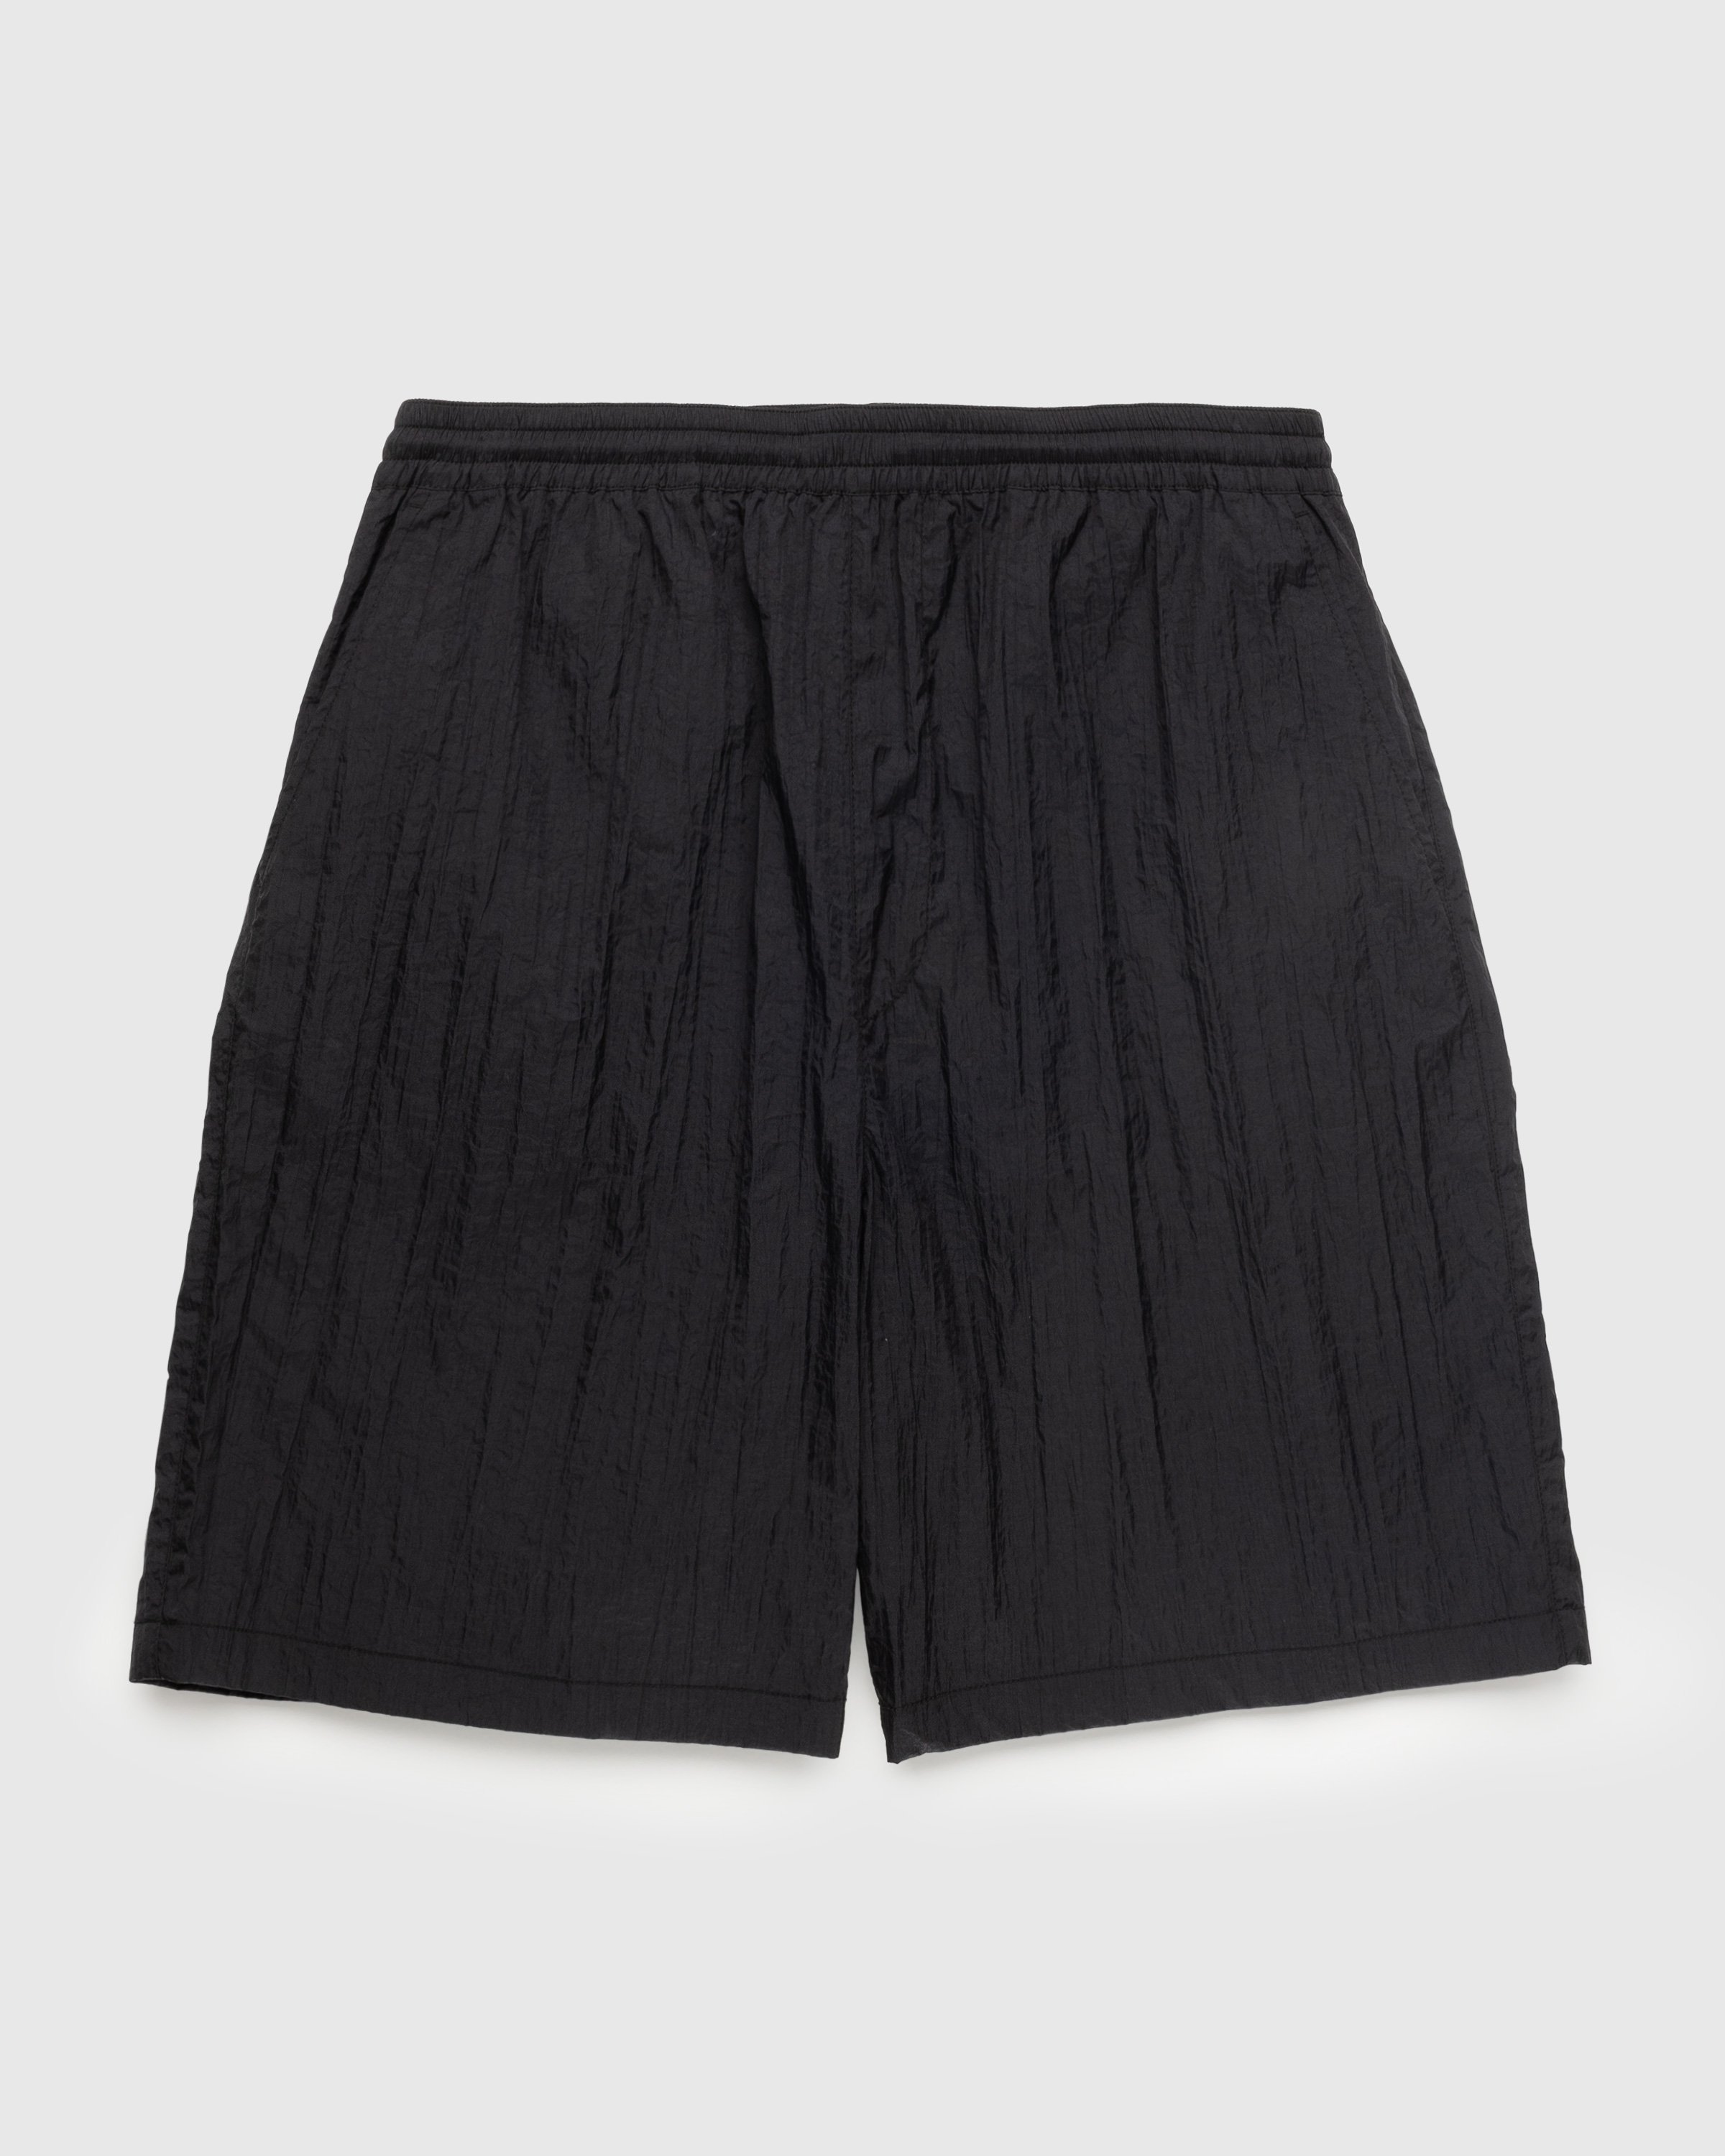 Highsnobiety - Texture Nylon Mid Length Elastic Shorts Black - Clothing - Black - Image 1